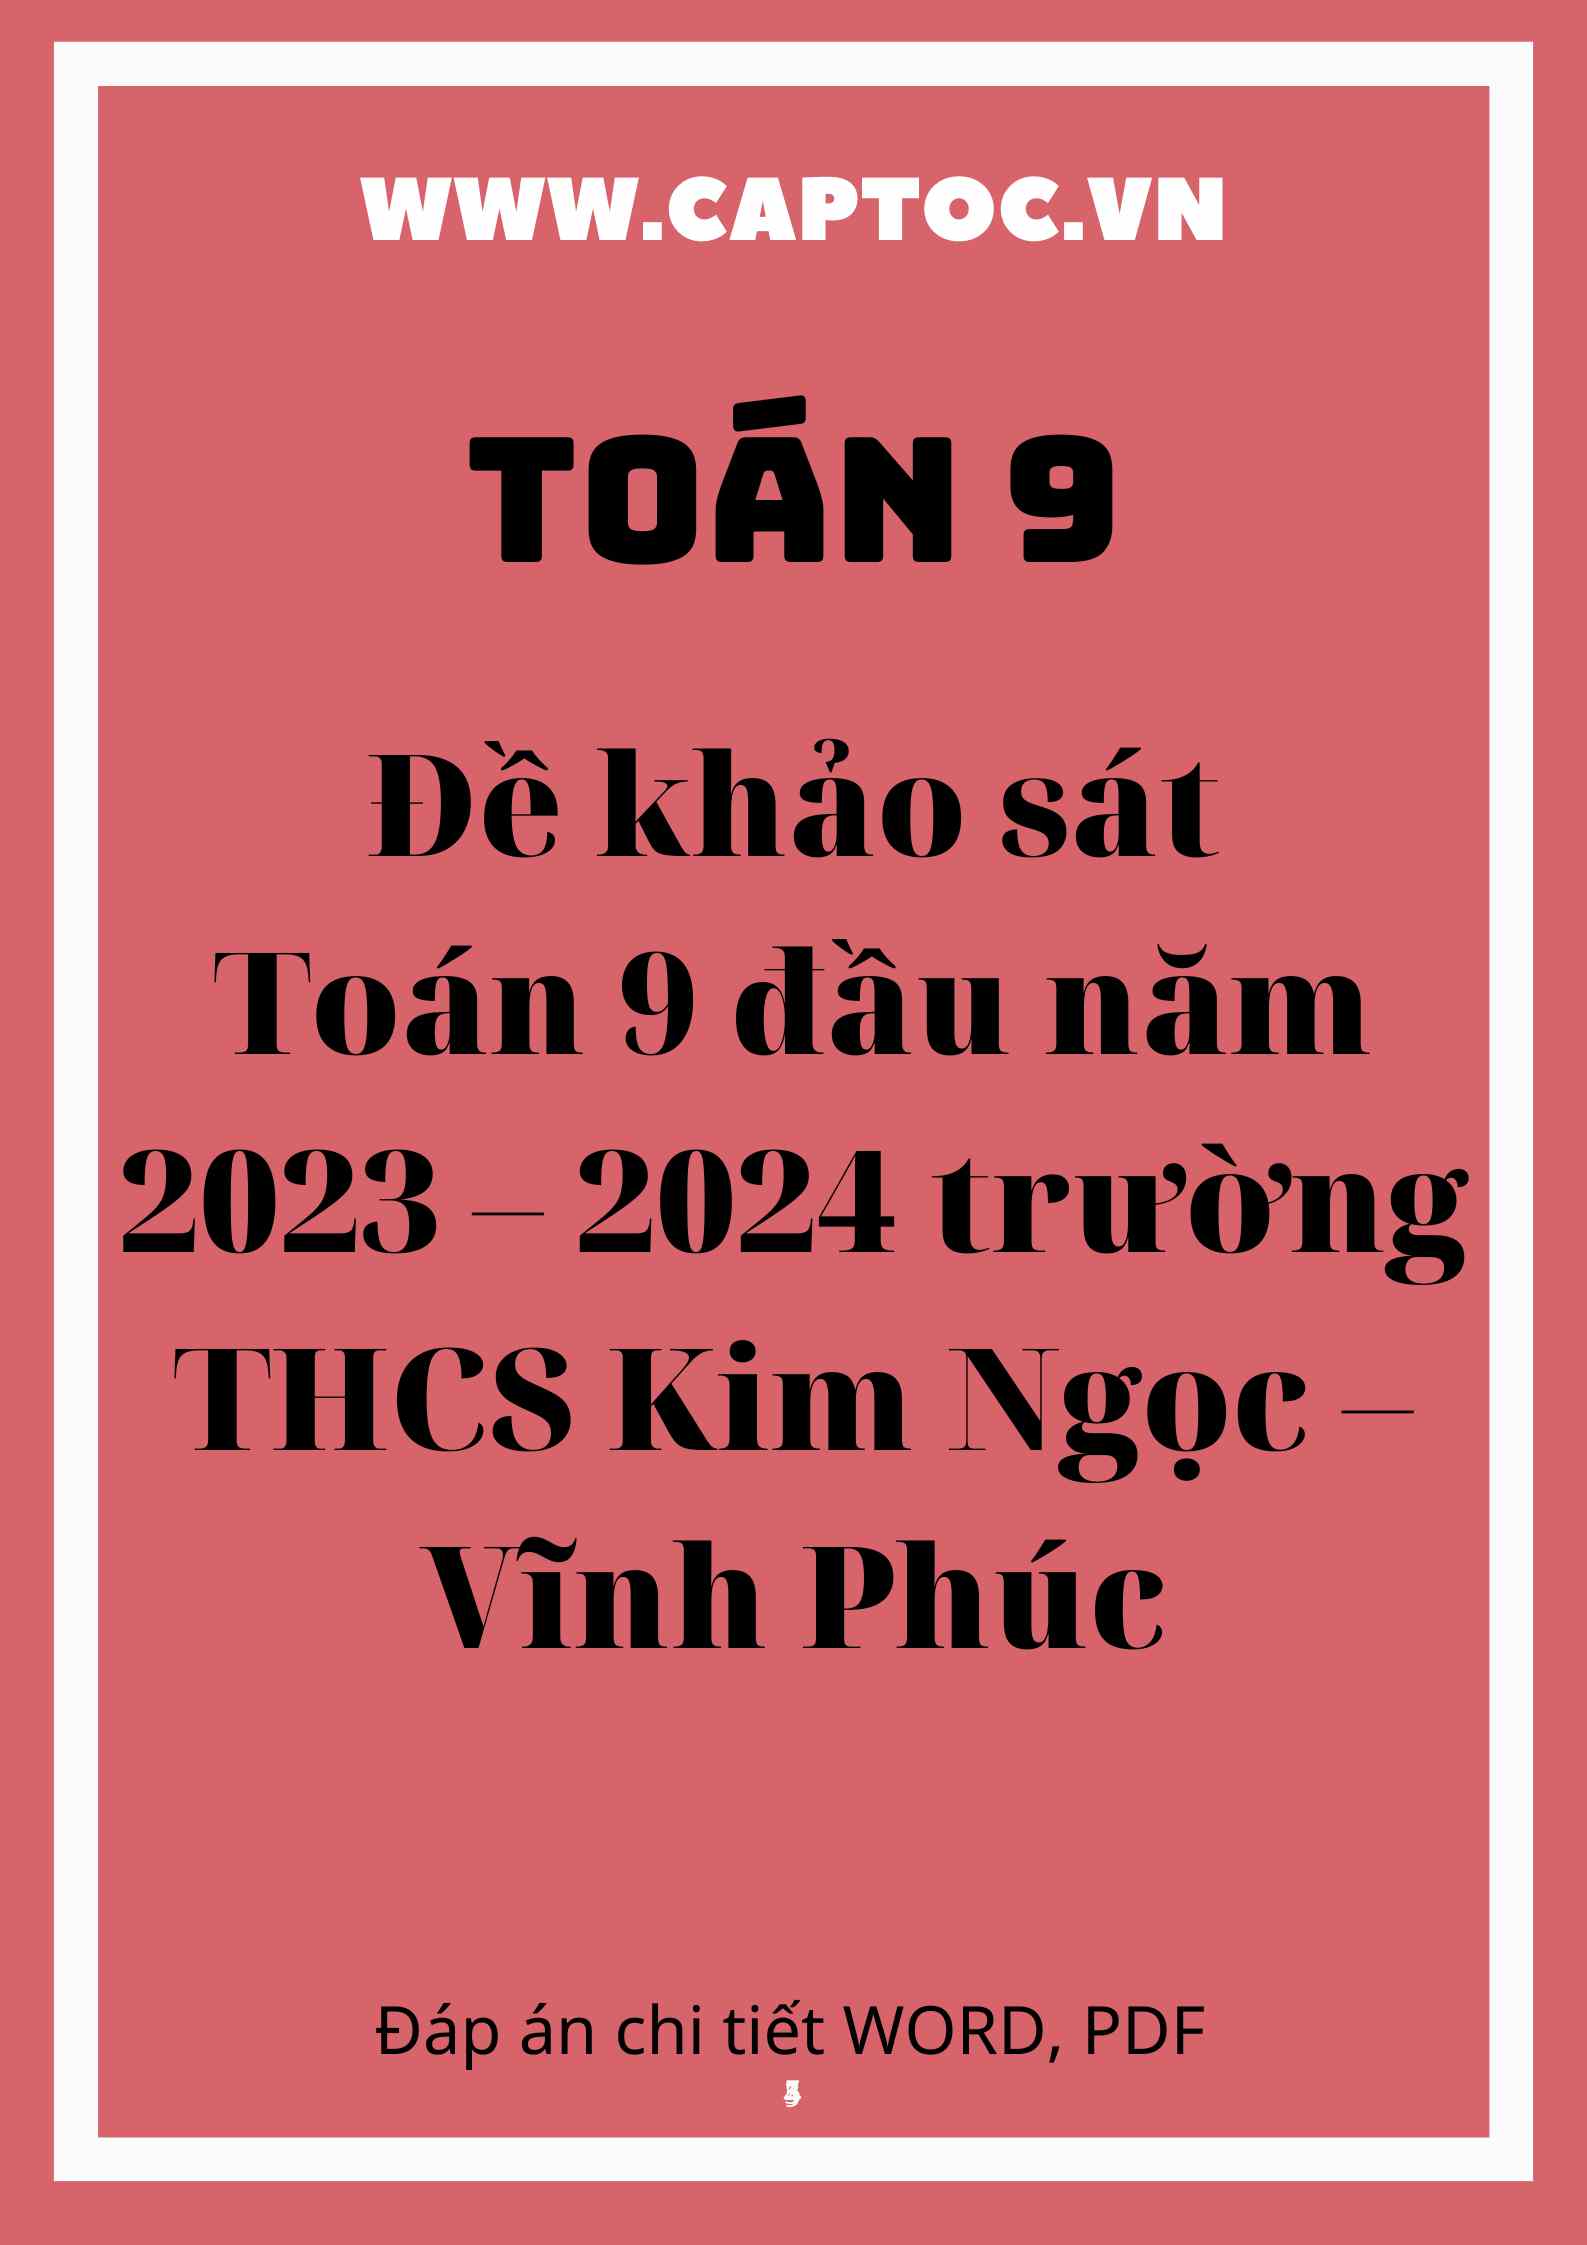 Đề khảo sát Toán 9 đầu năm 2023 – 2024 trường THCS Kim Ngọc – Vĩnh Phúc